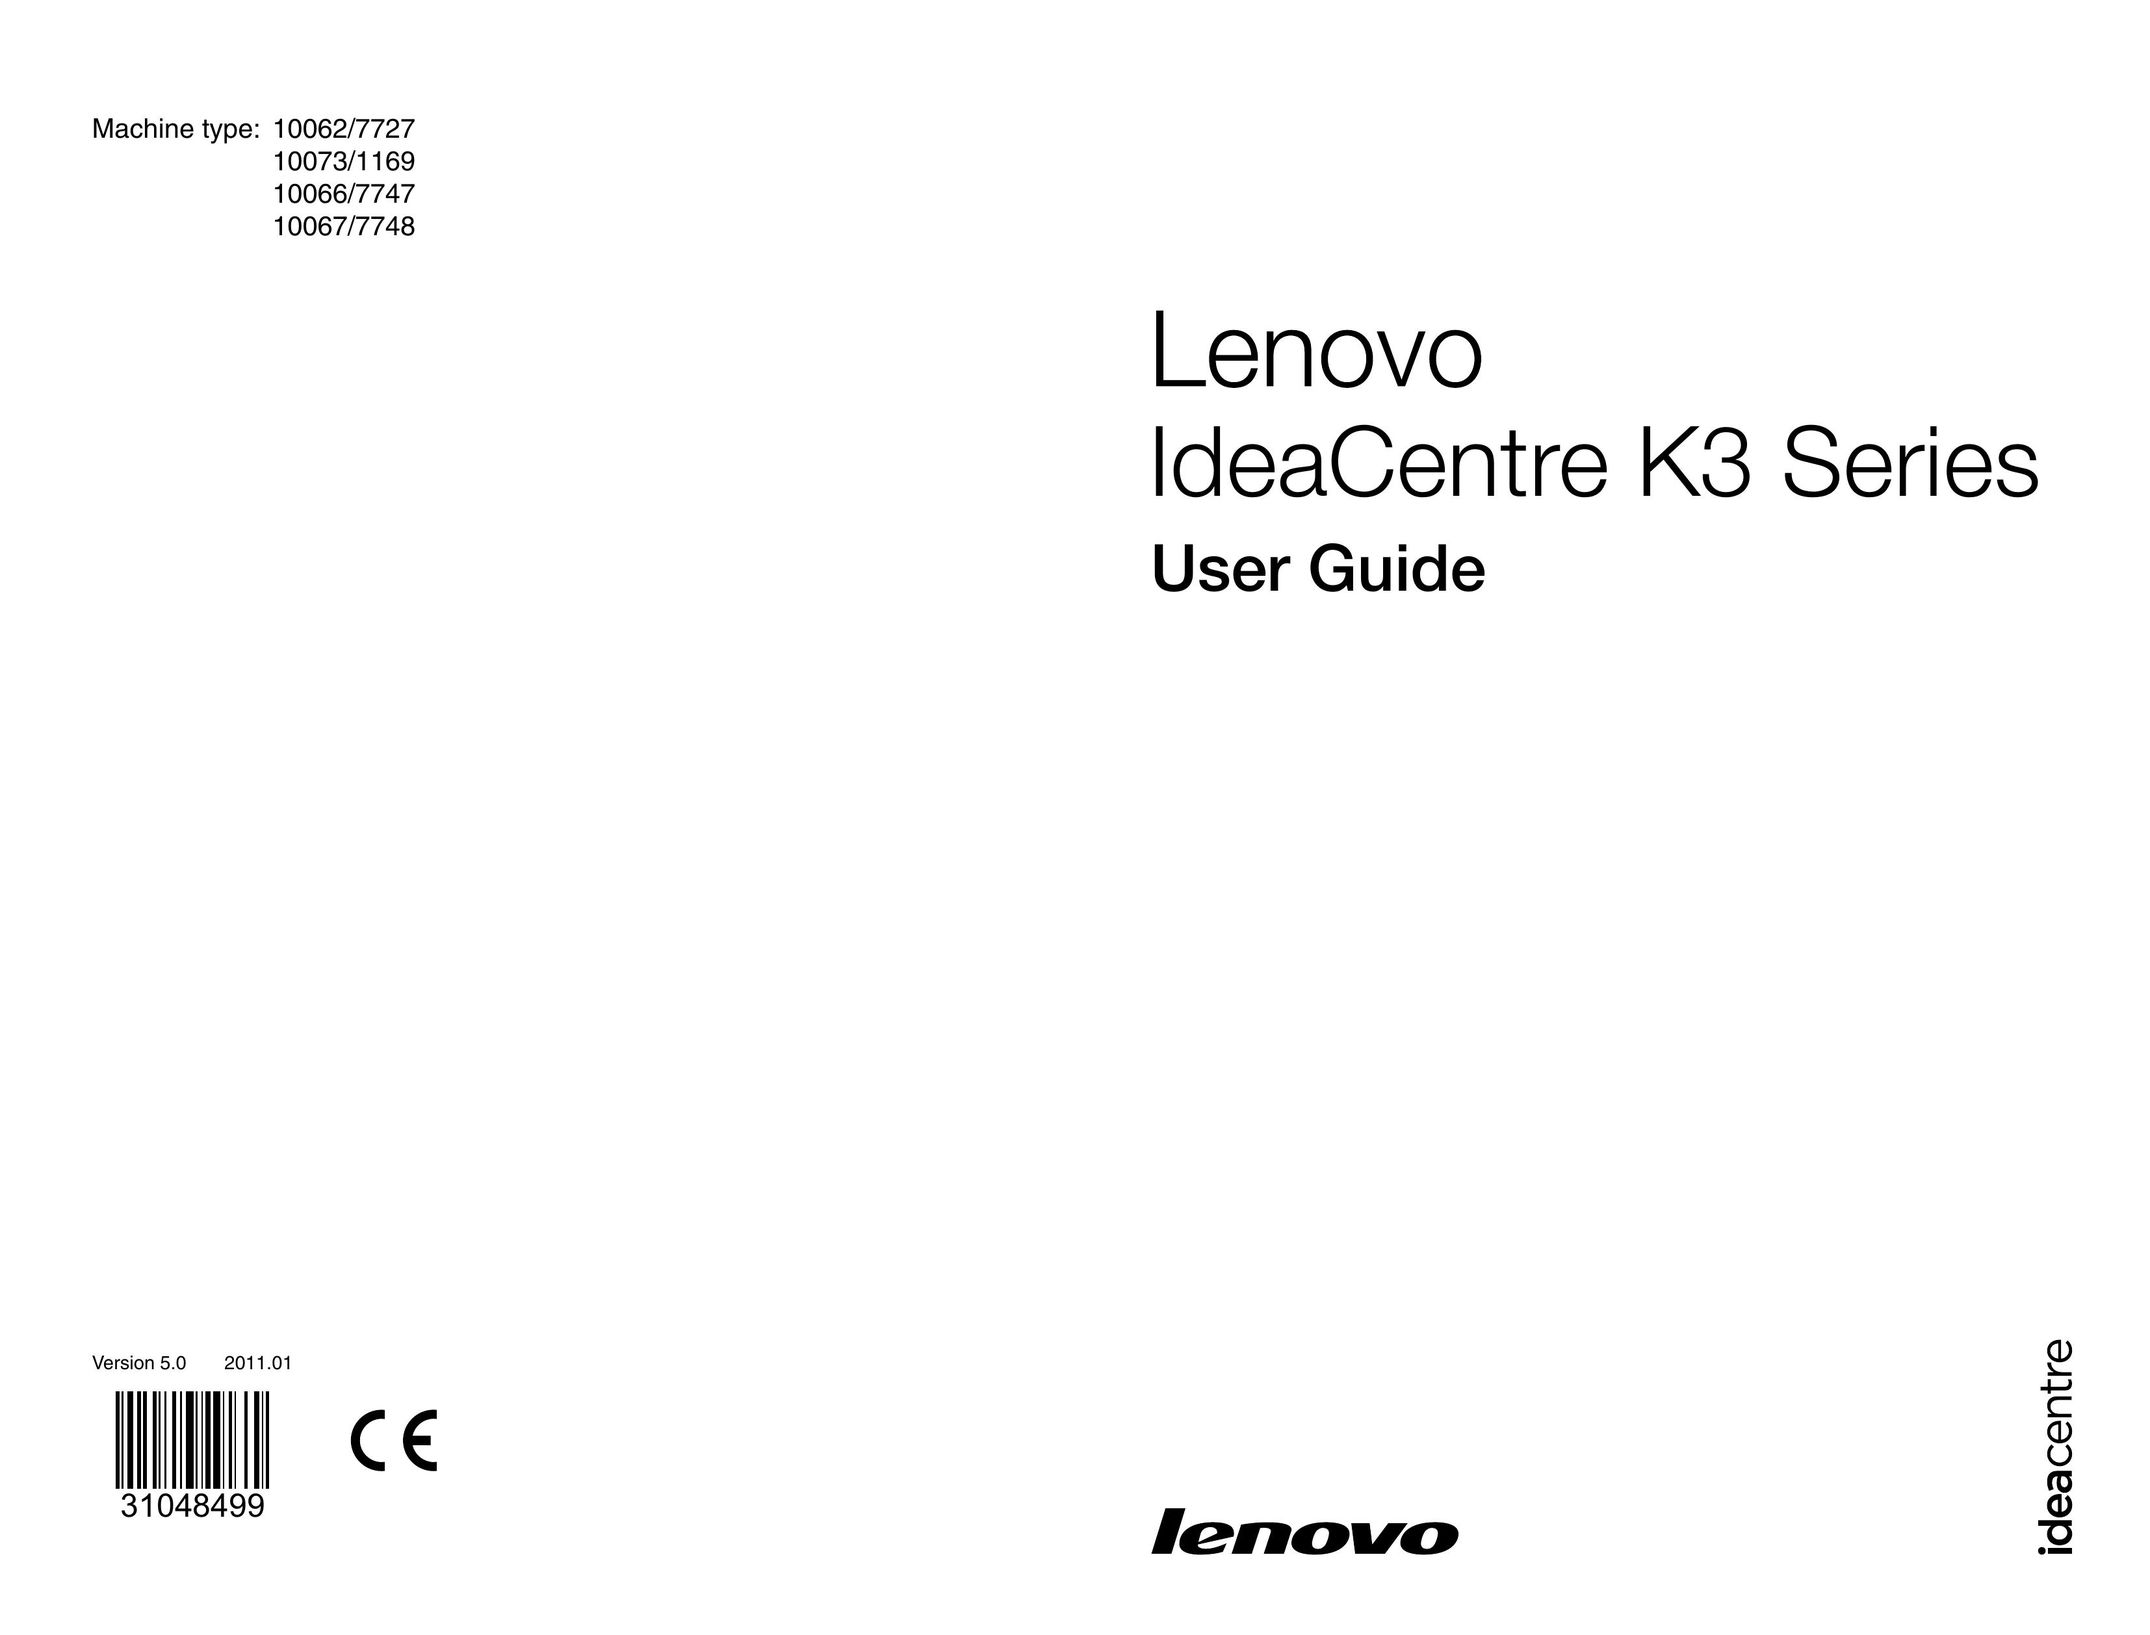 Lenovo 10066/7747 Tablet User Manual